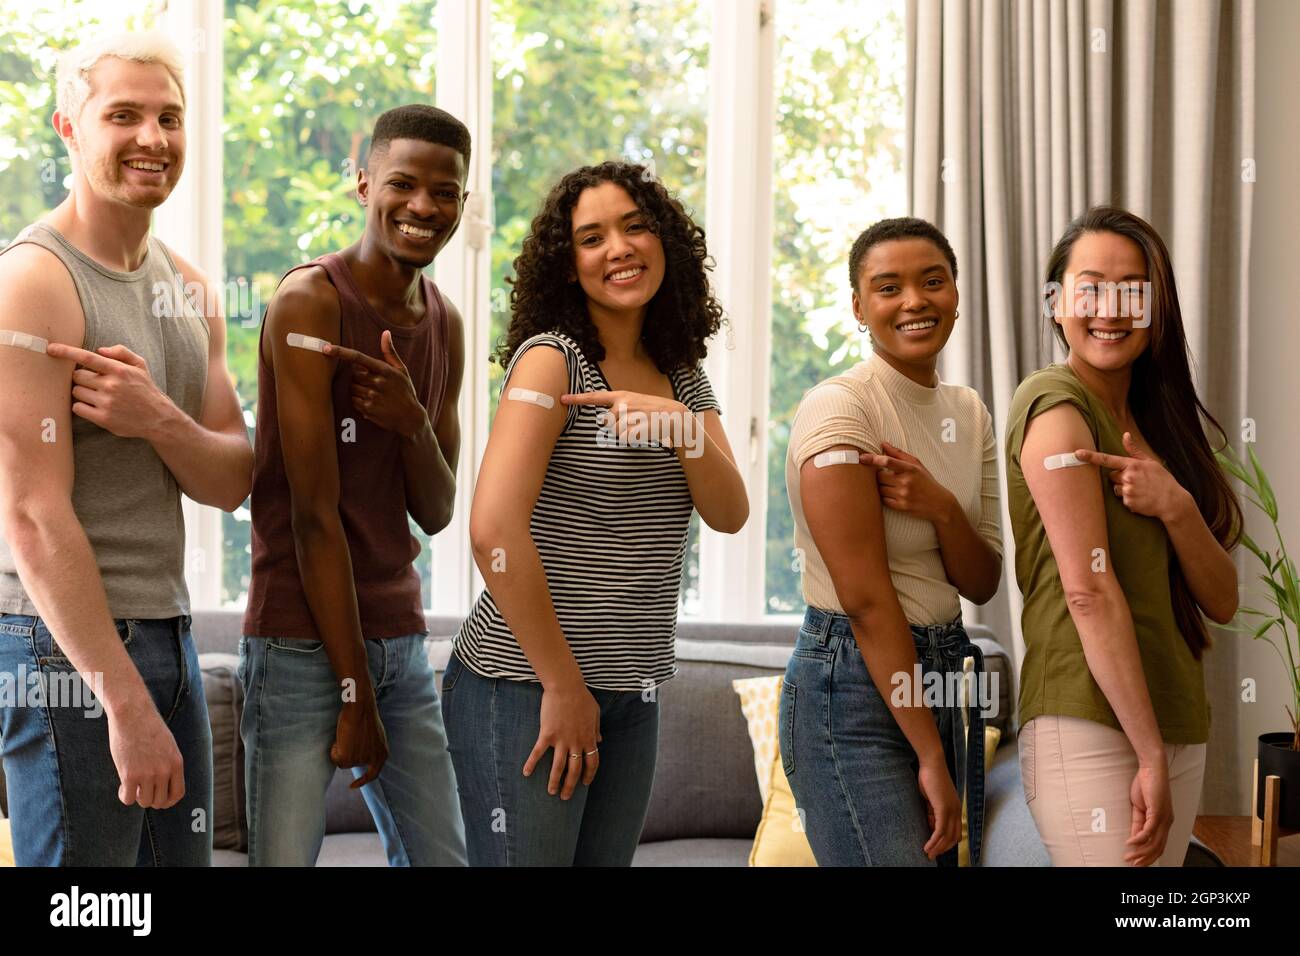 Groupe d'amis féminins et masculins variés heureux montrant des pansements après la vaccination Banque D'Images